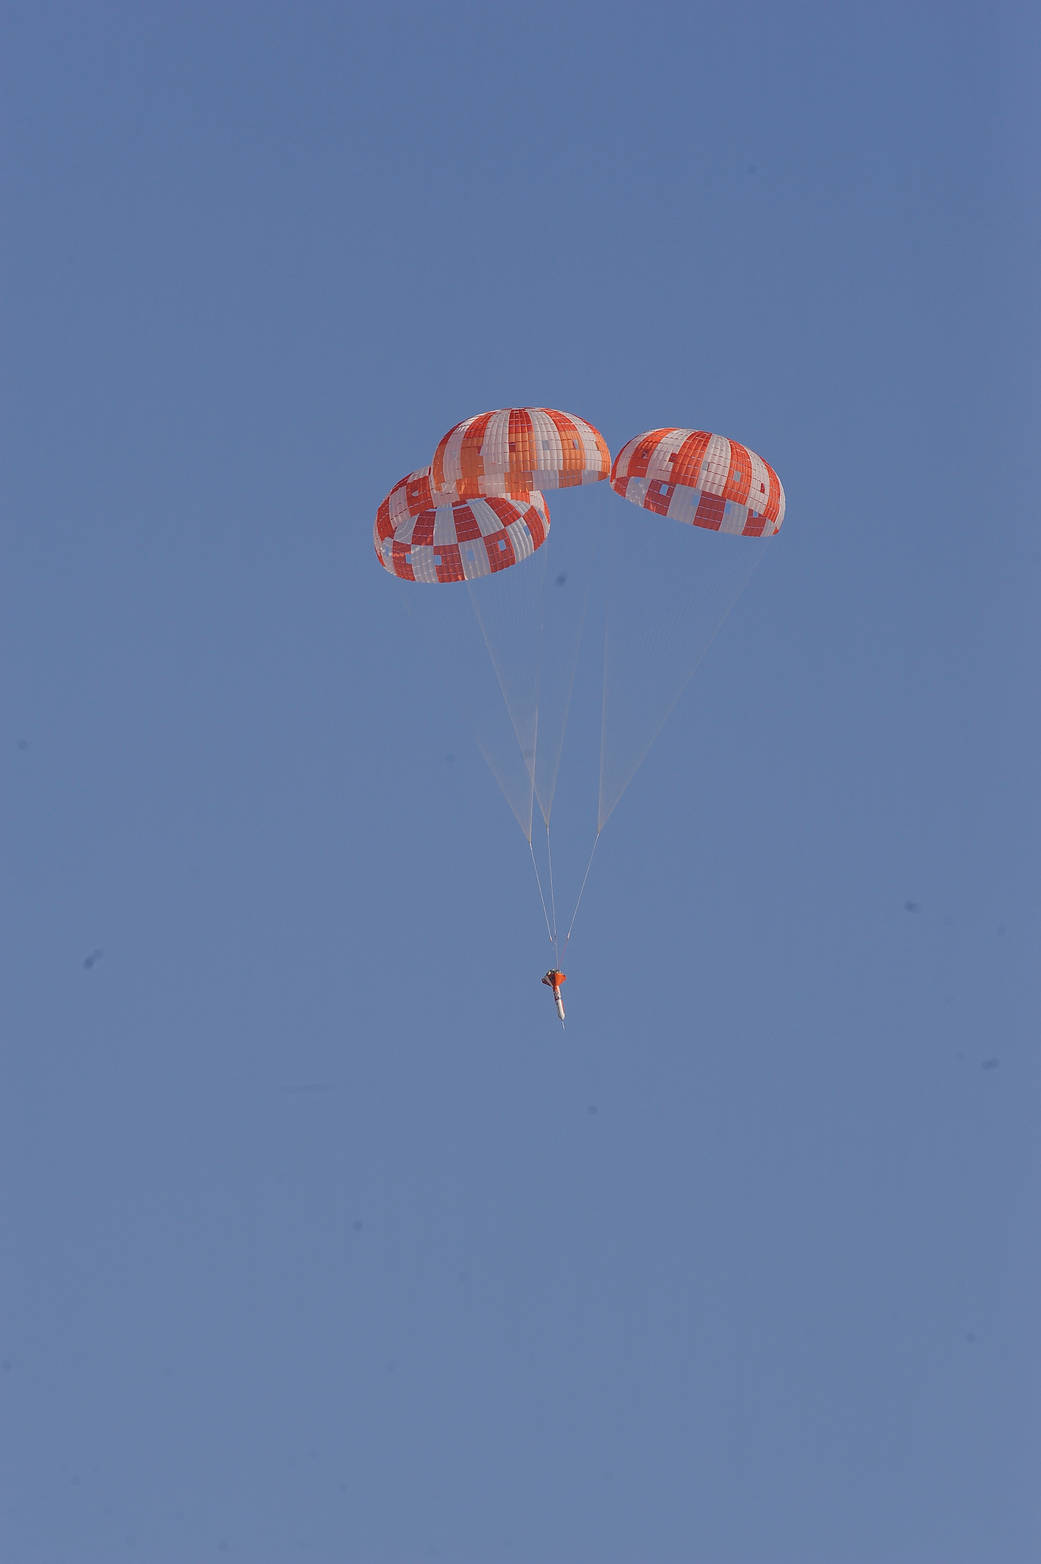 Aug. 28, 2012, Orion Parachute Test